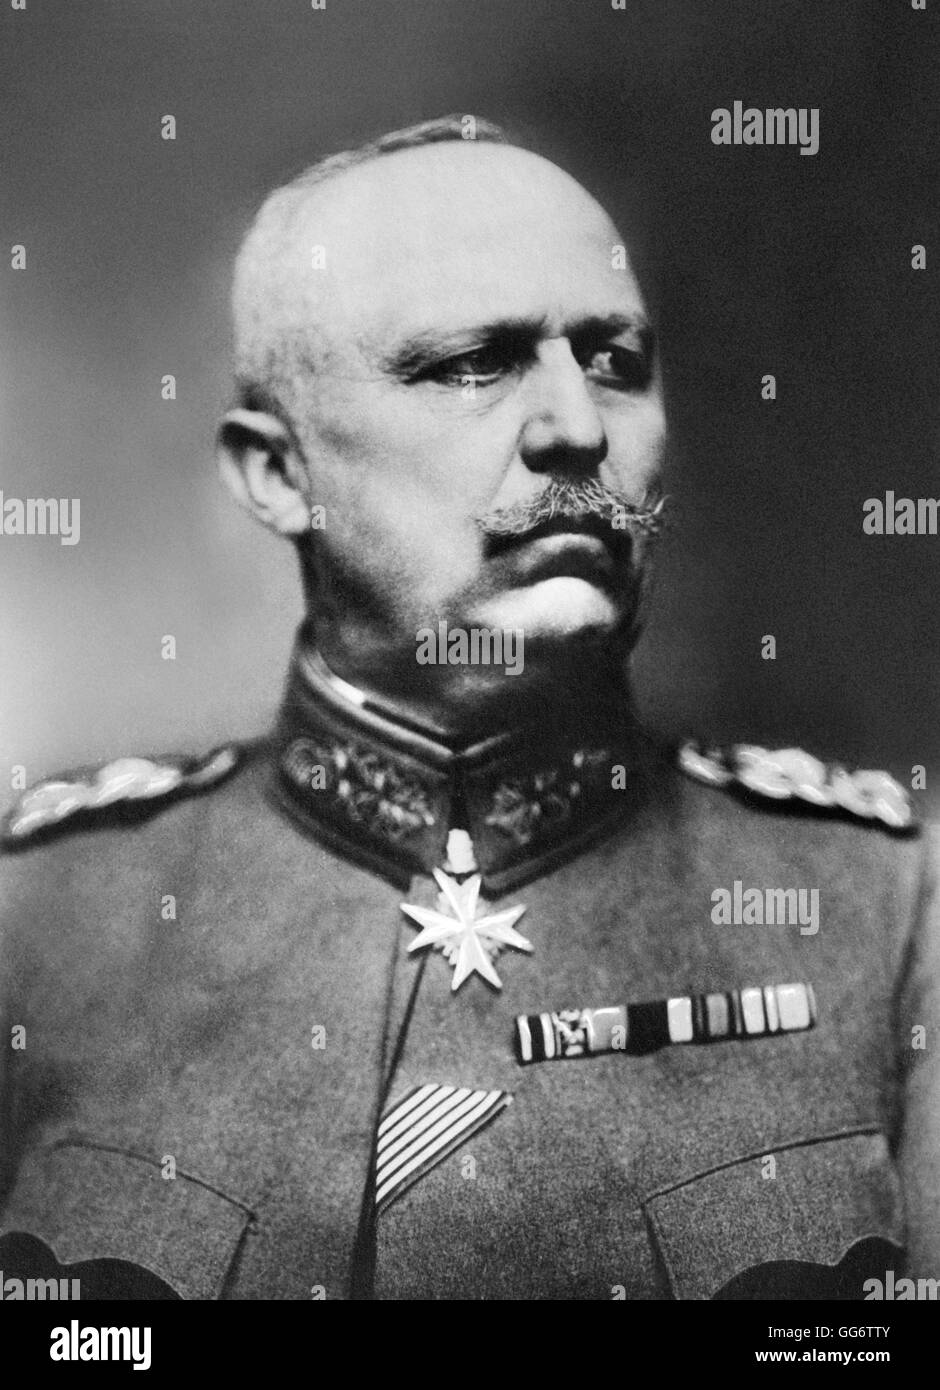 Erich Ludendorff. Ritratto del generale Erich Ludendorff (1865-1937), sostituto del capo di stato maggiore generale dell'esercito tedesco a partire dal mese di agosto 1916 in poi. Foto da Bain News Service, data sconosciuta. Foto Stock